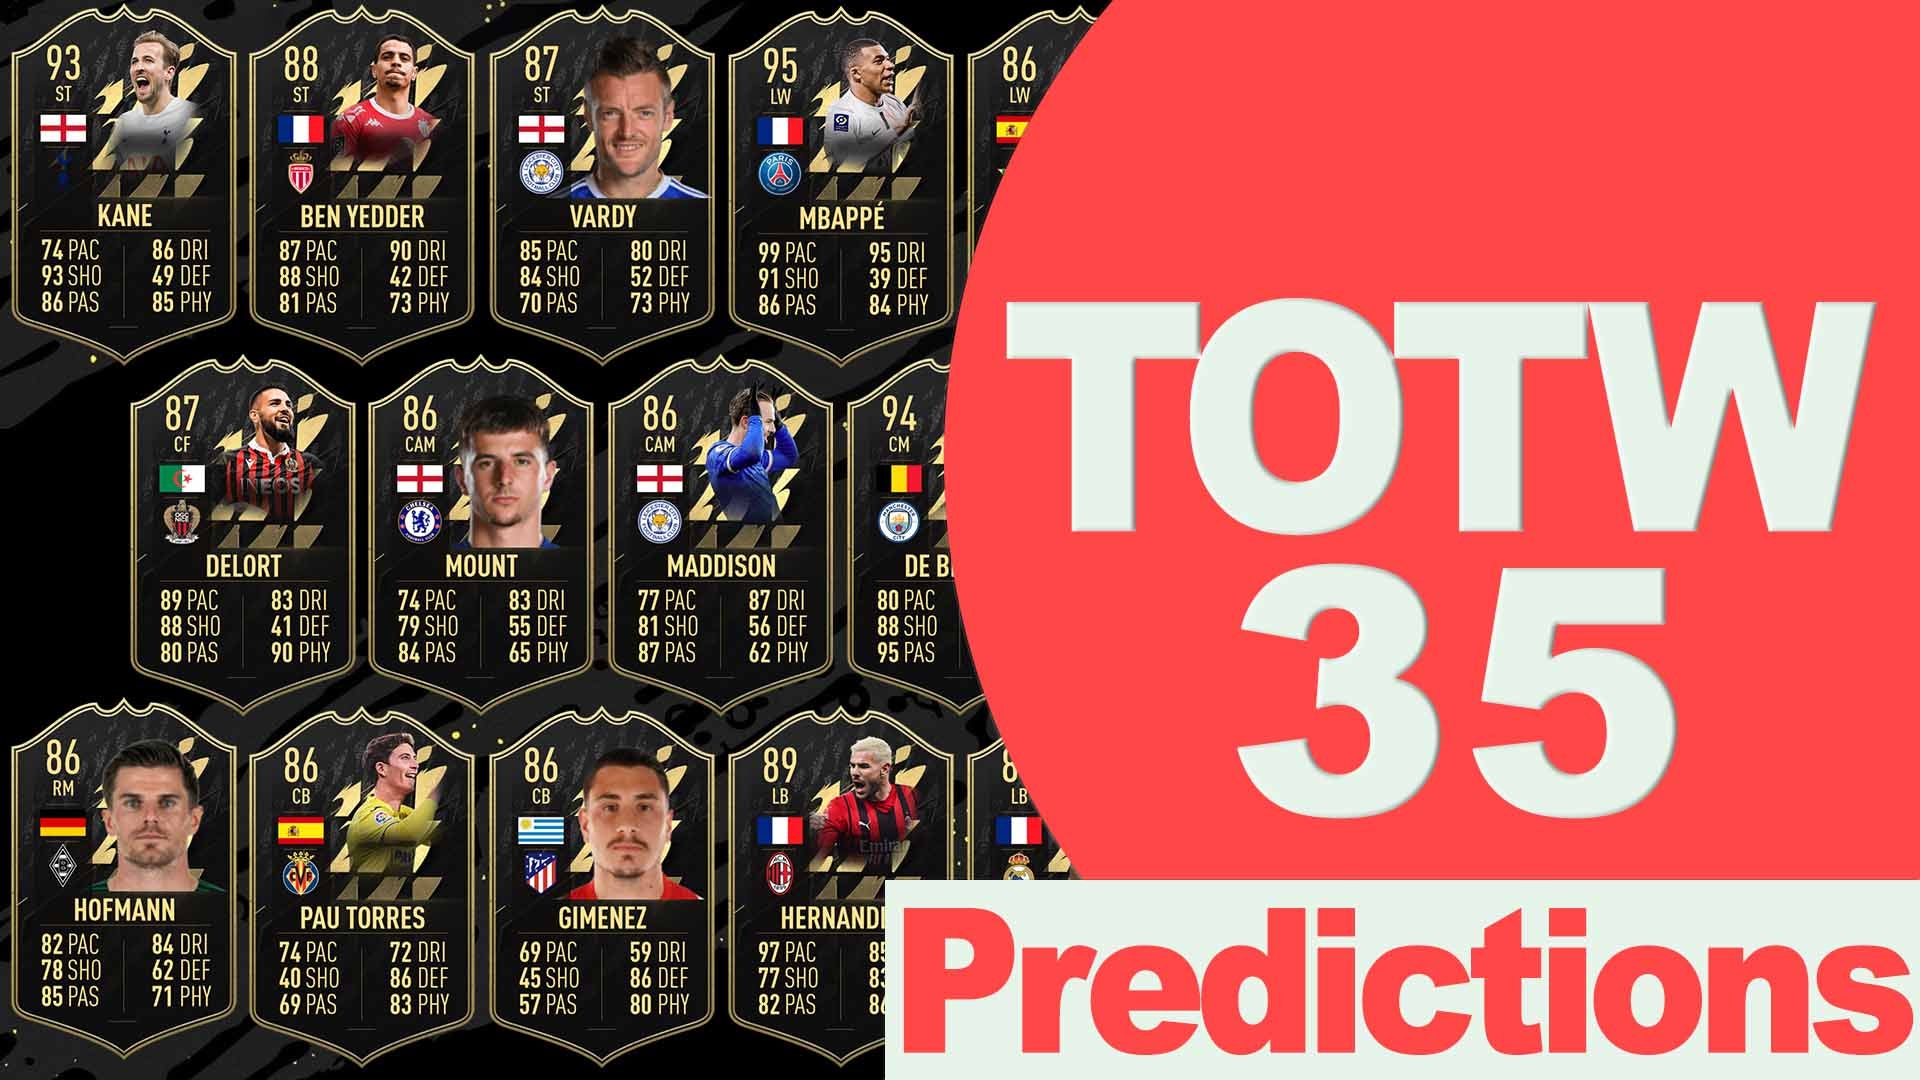 Bilder zu FIFA 22 TOTW 35 Predictions: Die Vorhersagen für das neue Team of the Week